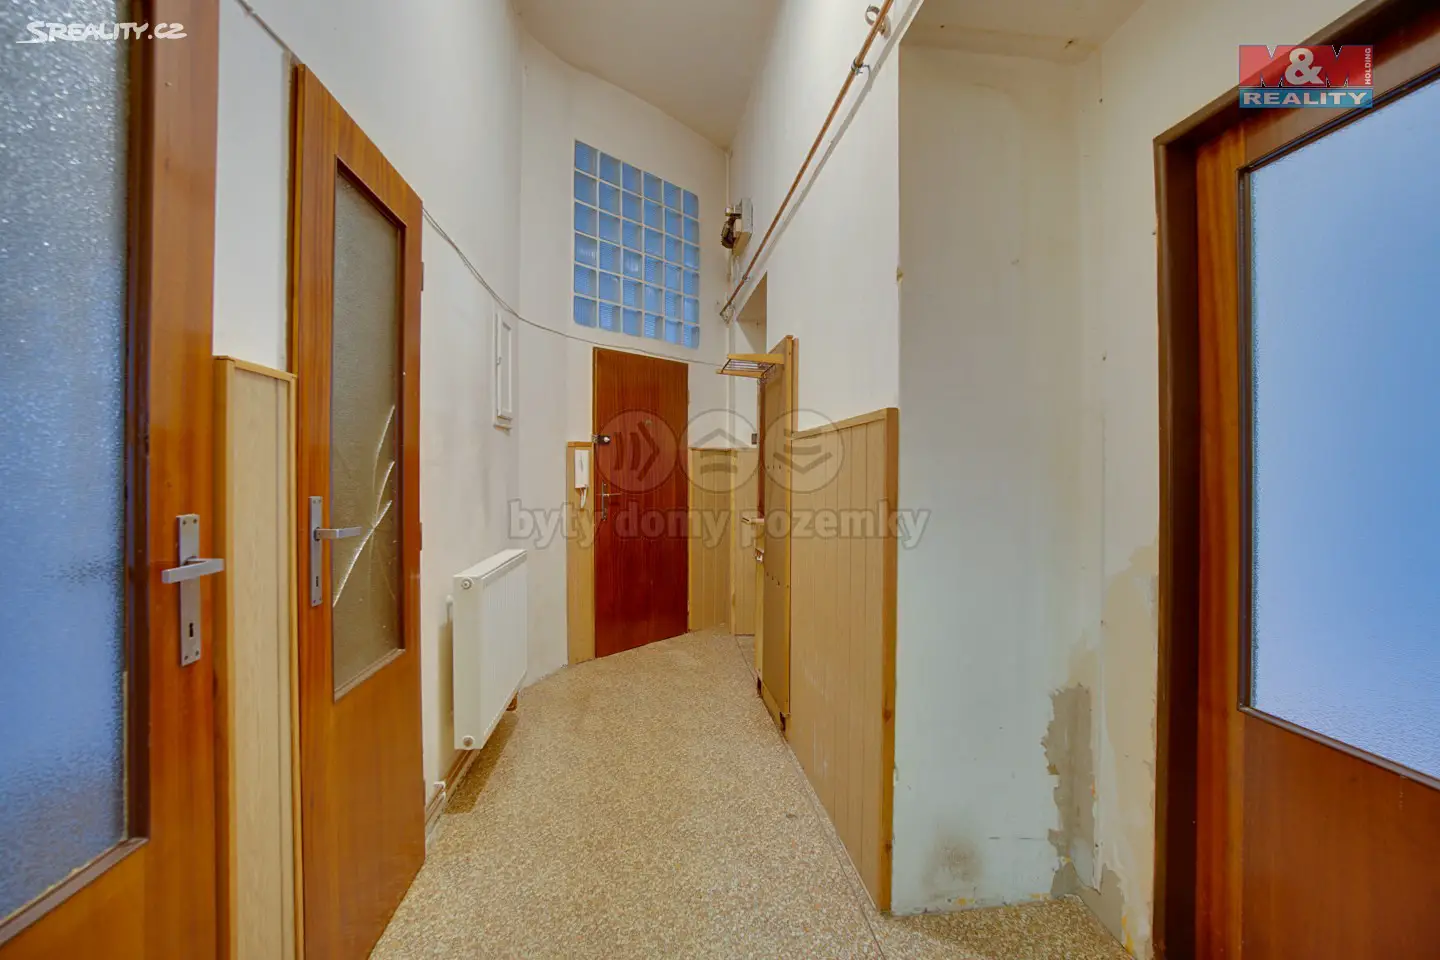 Prodej bytu 3+1 80 m², Lounská, Teplice